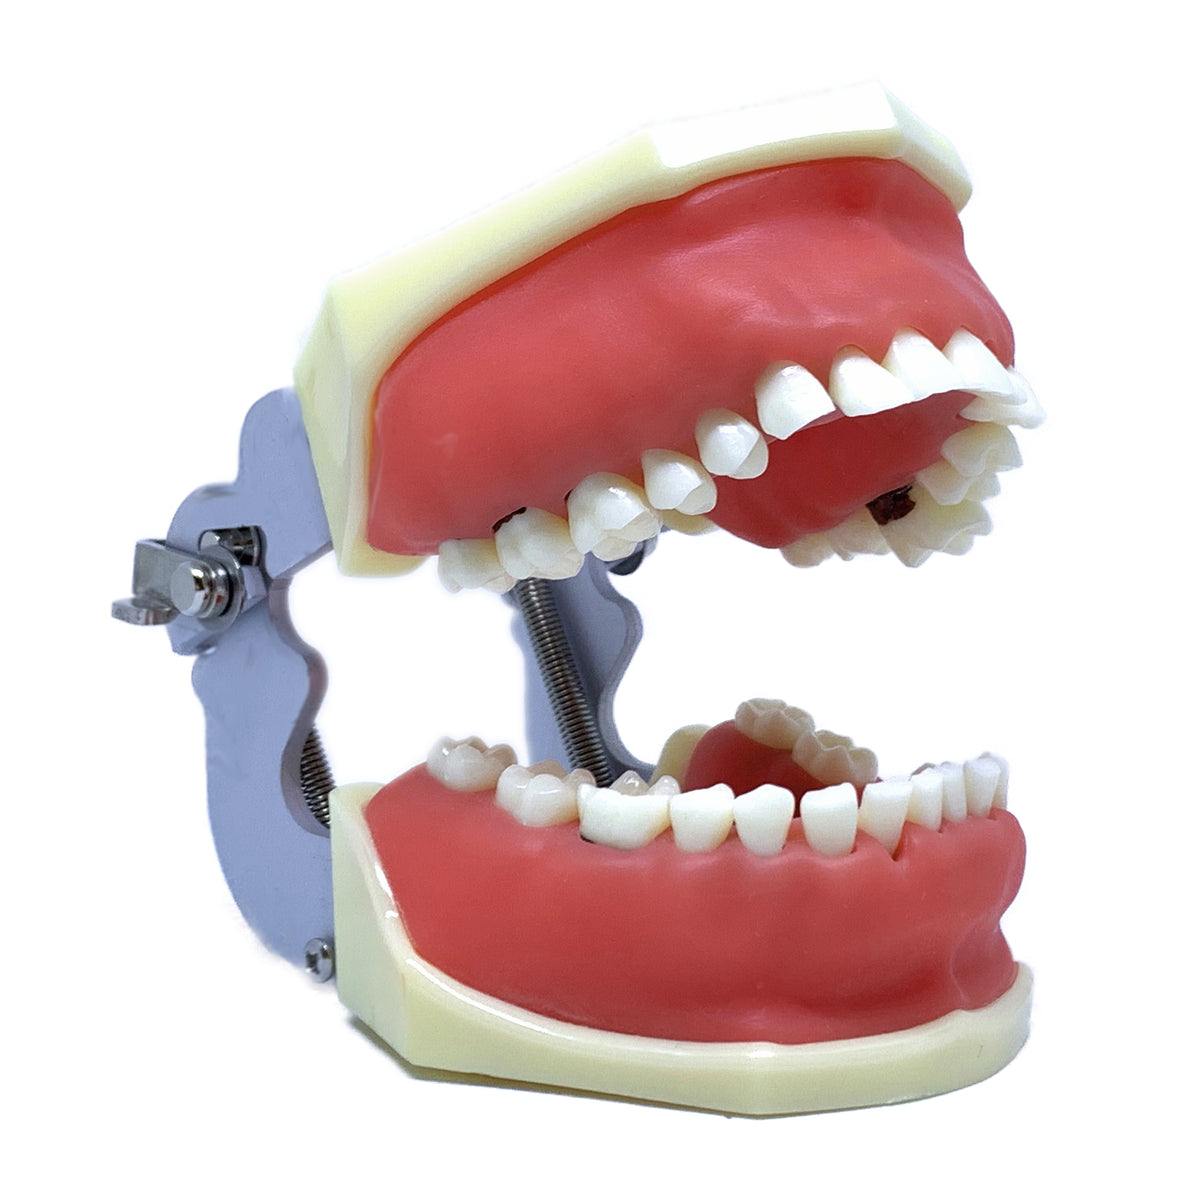 Model Boală Parodontală Cu Dinţi Detaşabili Cu şurub 4027 Anatomika 